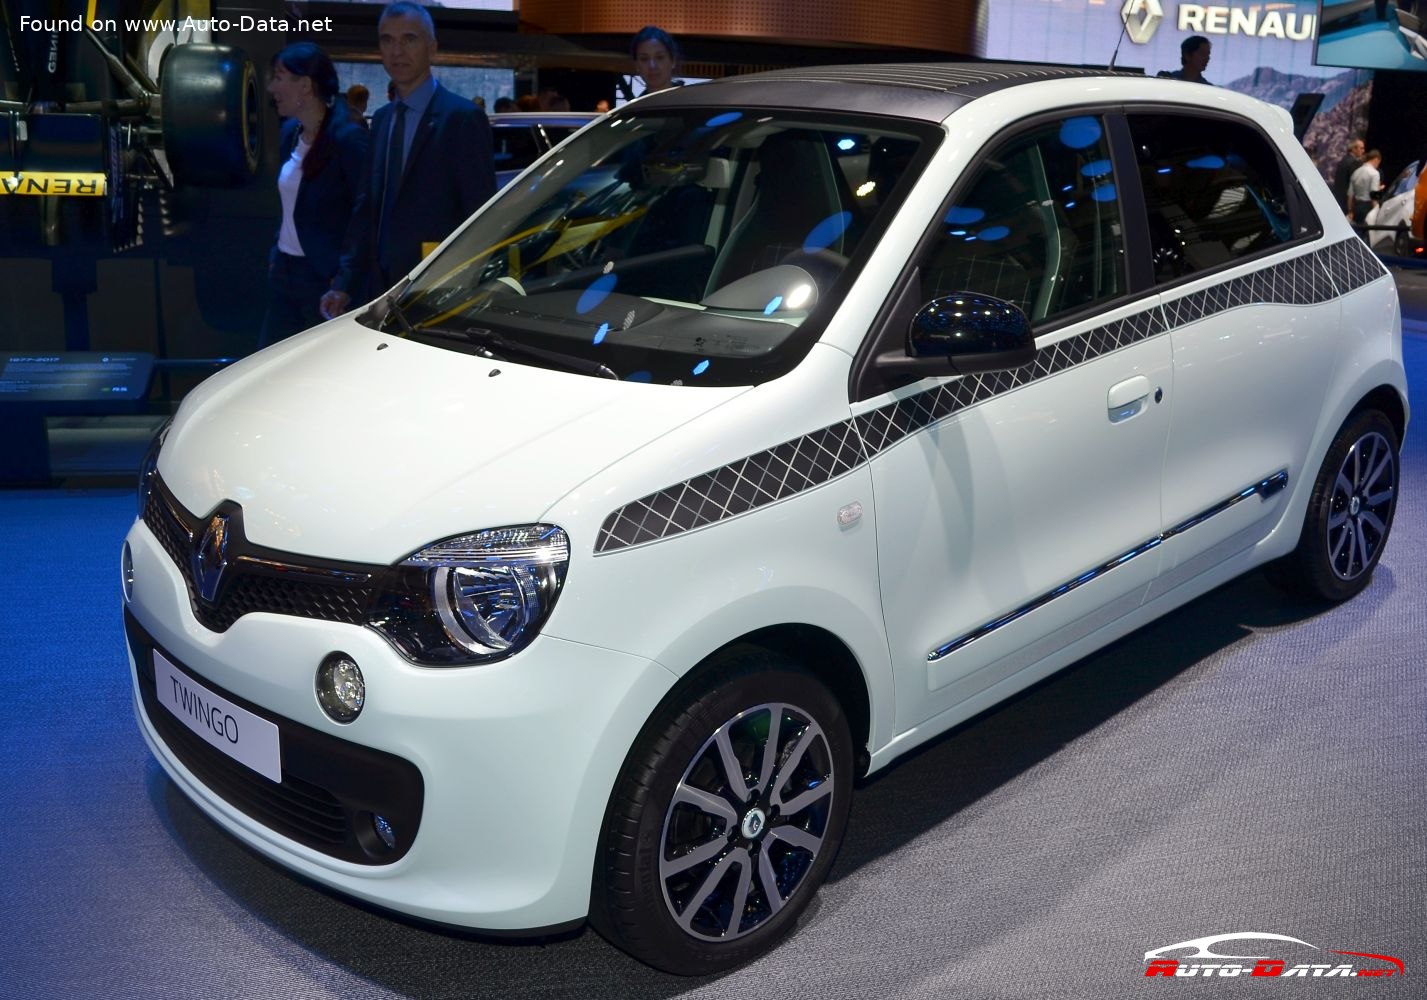 Renault Twingo 0.9 TCE - letsoho le lecha le sebete